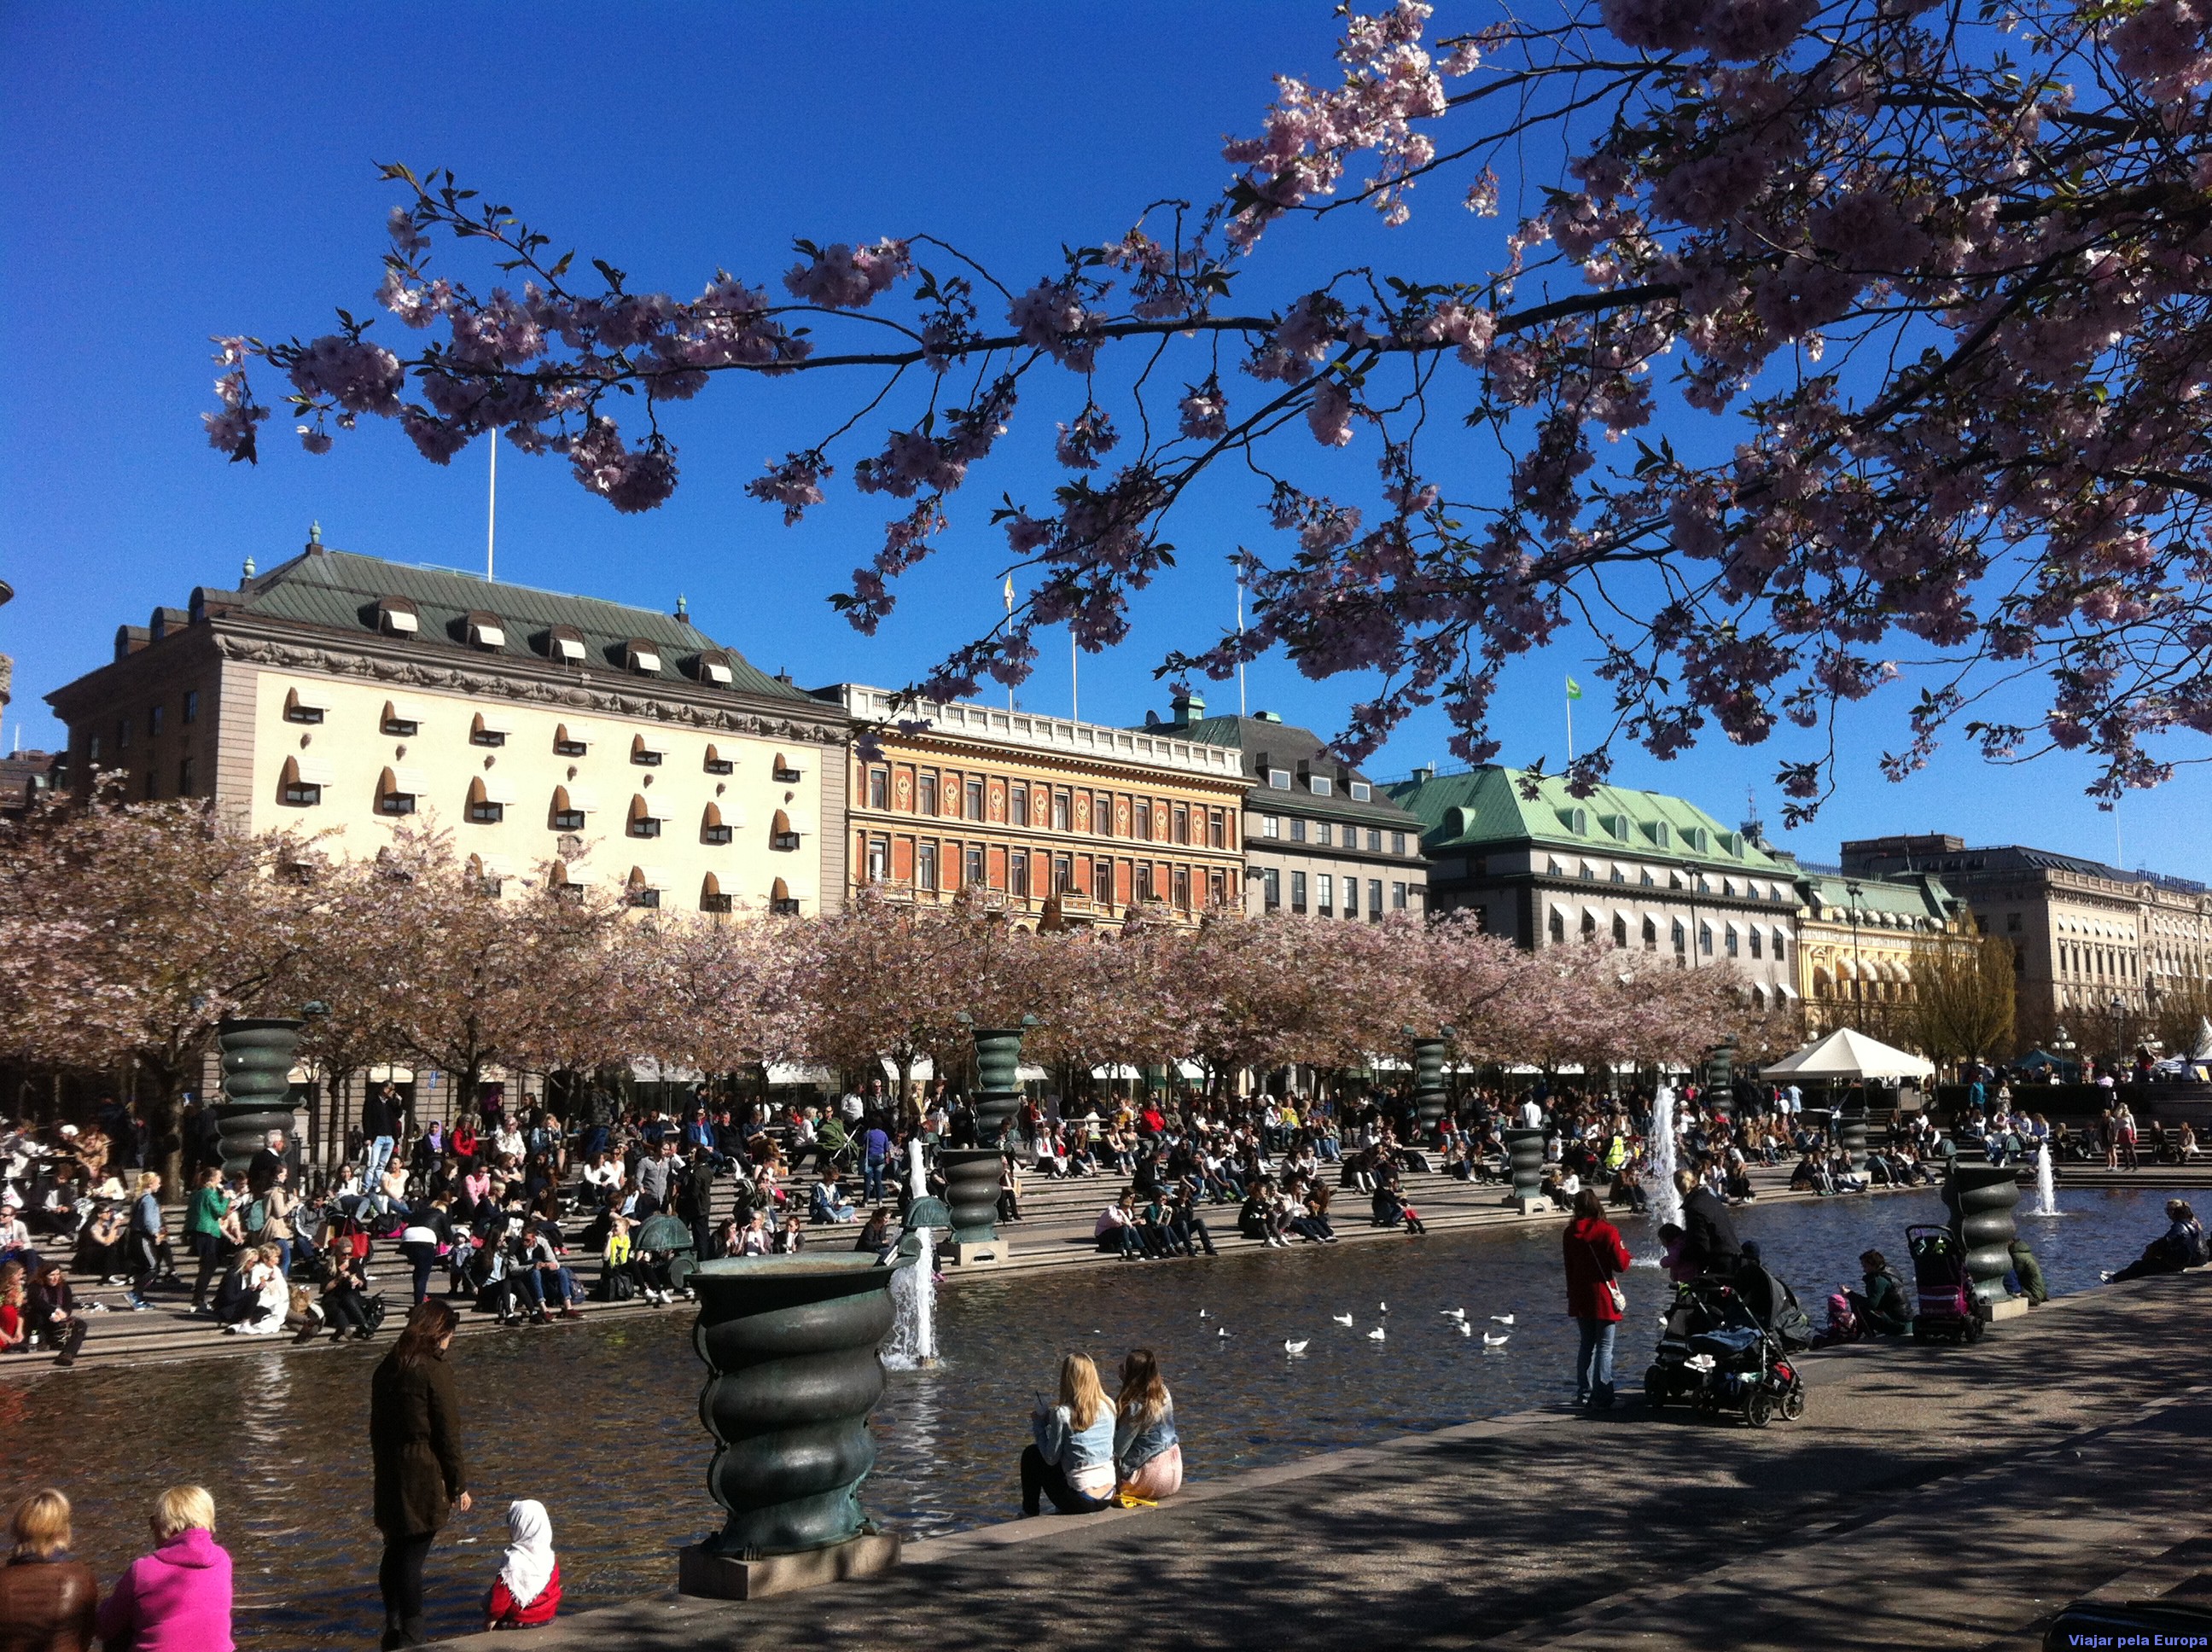 Kungsträdgården, praça onde acontecem vários eventos públicos no centro de Estocolmo.